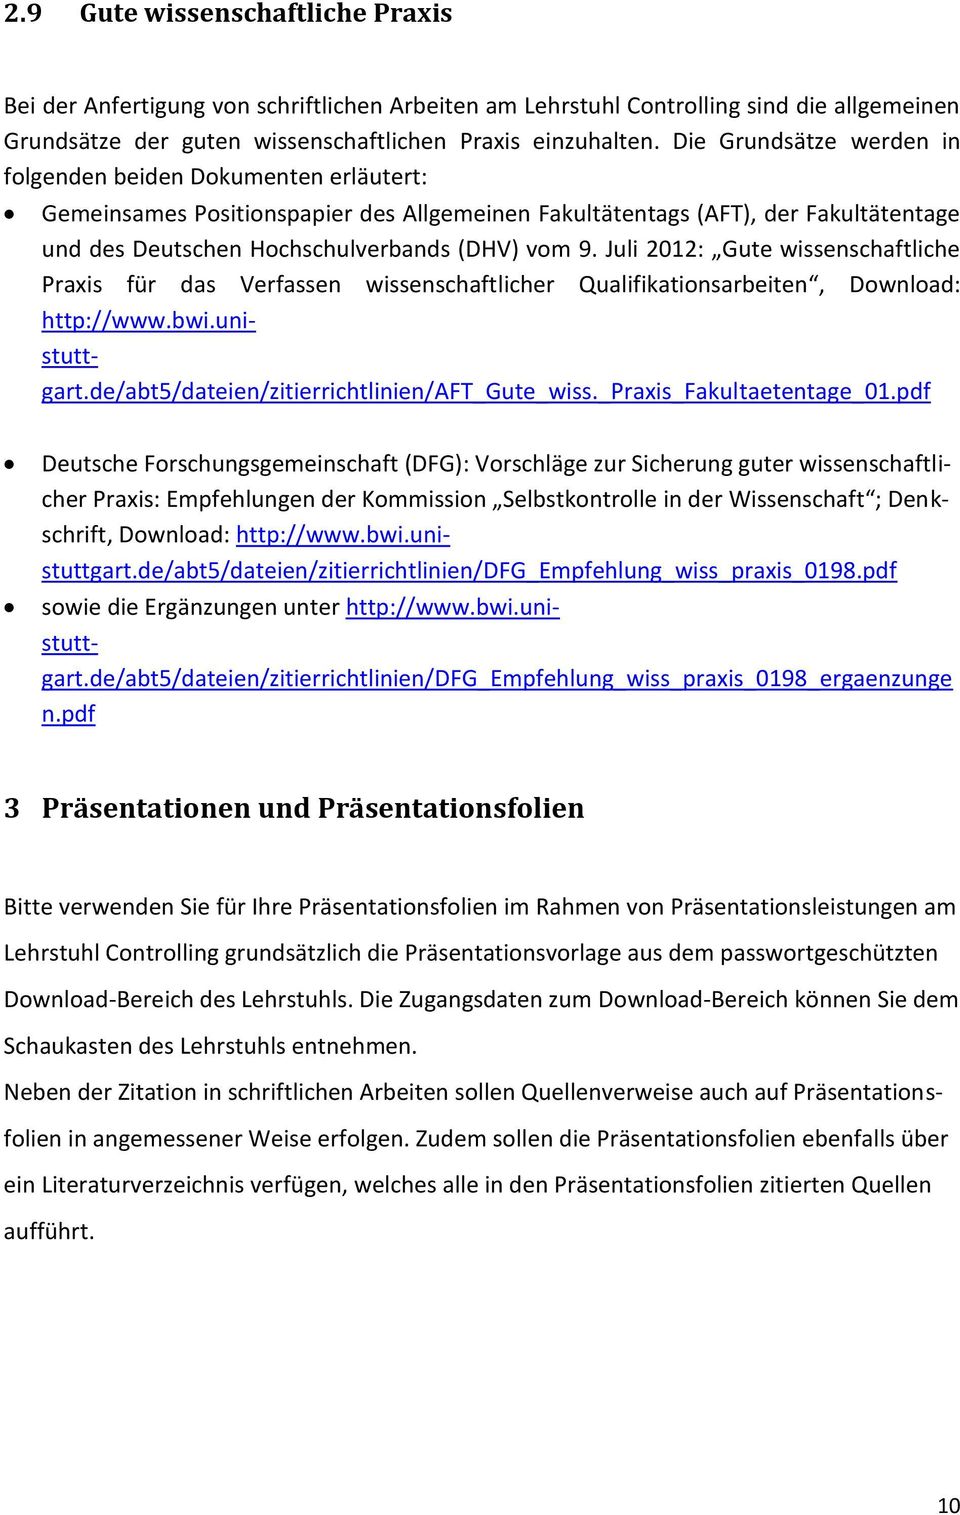 Juli 2012: Gute wissenschaftliche Praxis für das Verfassen wissenschaftlicher Qualifikationsarbeiten, Download: http://www.bwi.unistuttgart.de/abt5/dateien/zitierrichtlinien/aft_gute_wiss.